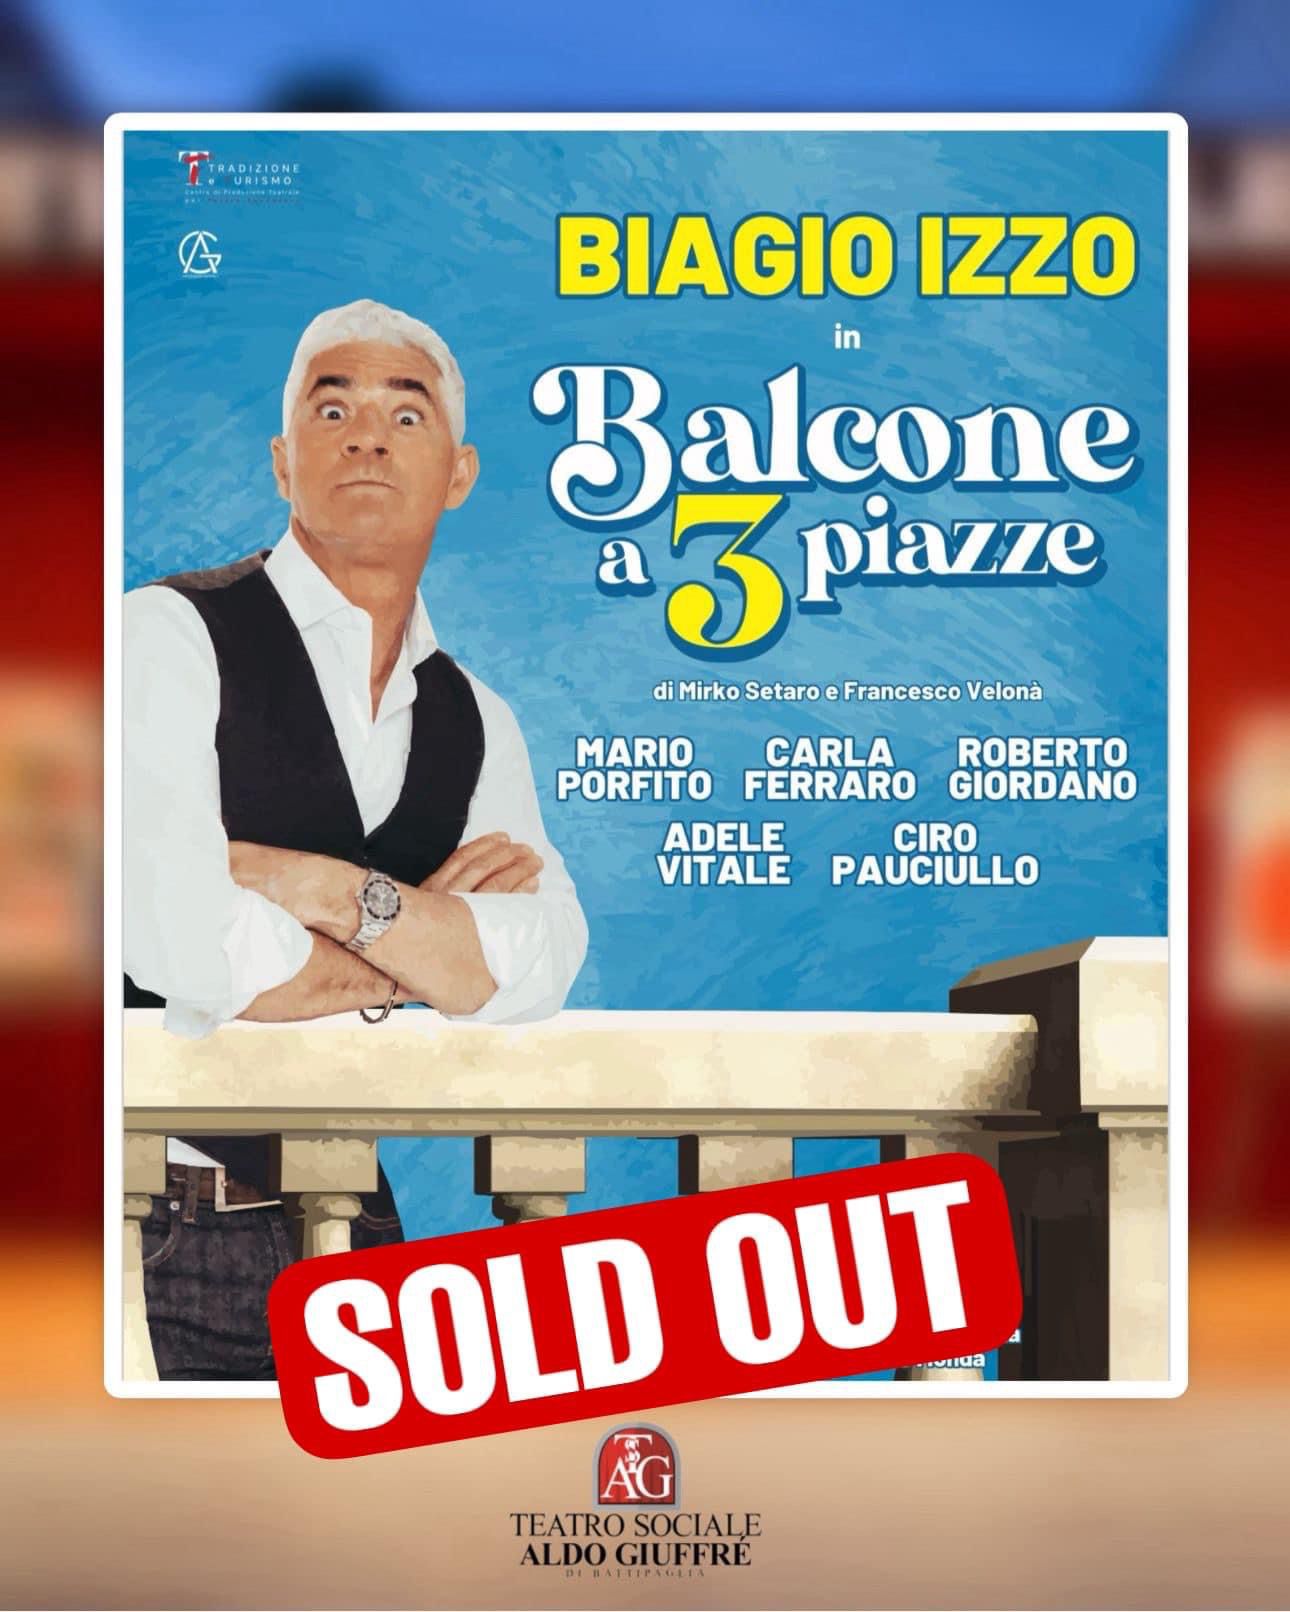 Battipaglia: a Teatro Giuffré “Balcone a 3 piazze”, sold out per Biaggio Izzo